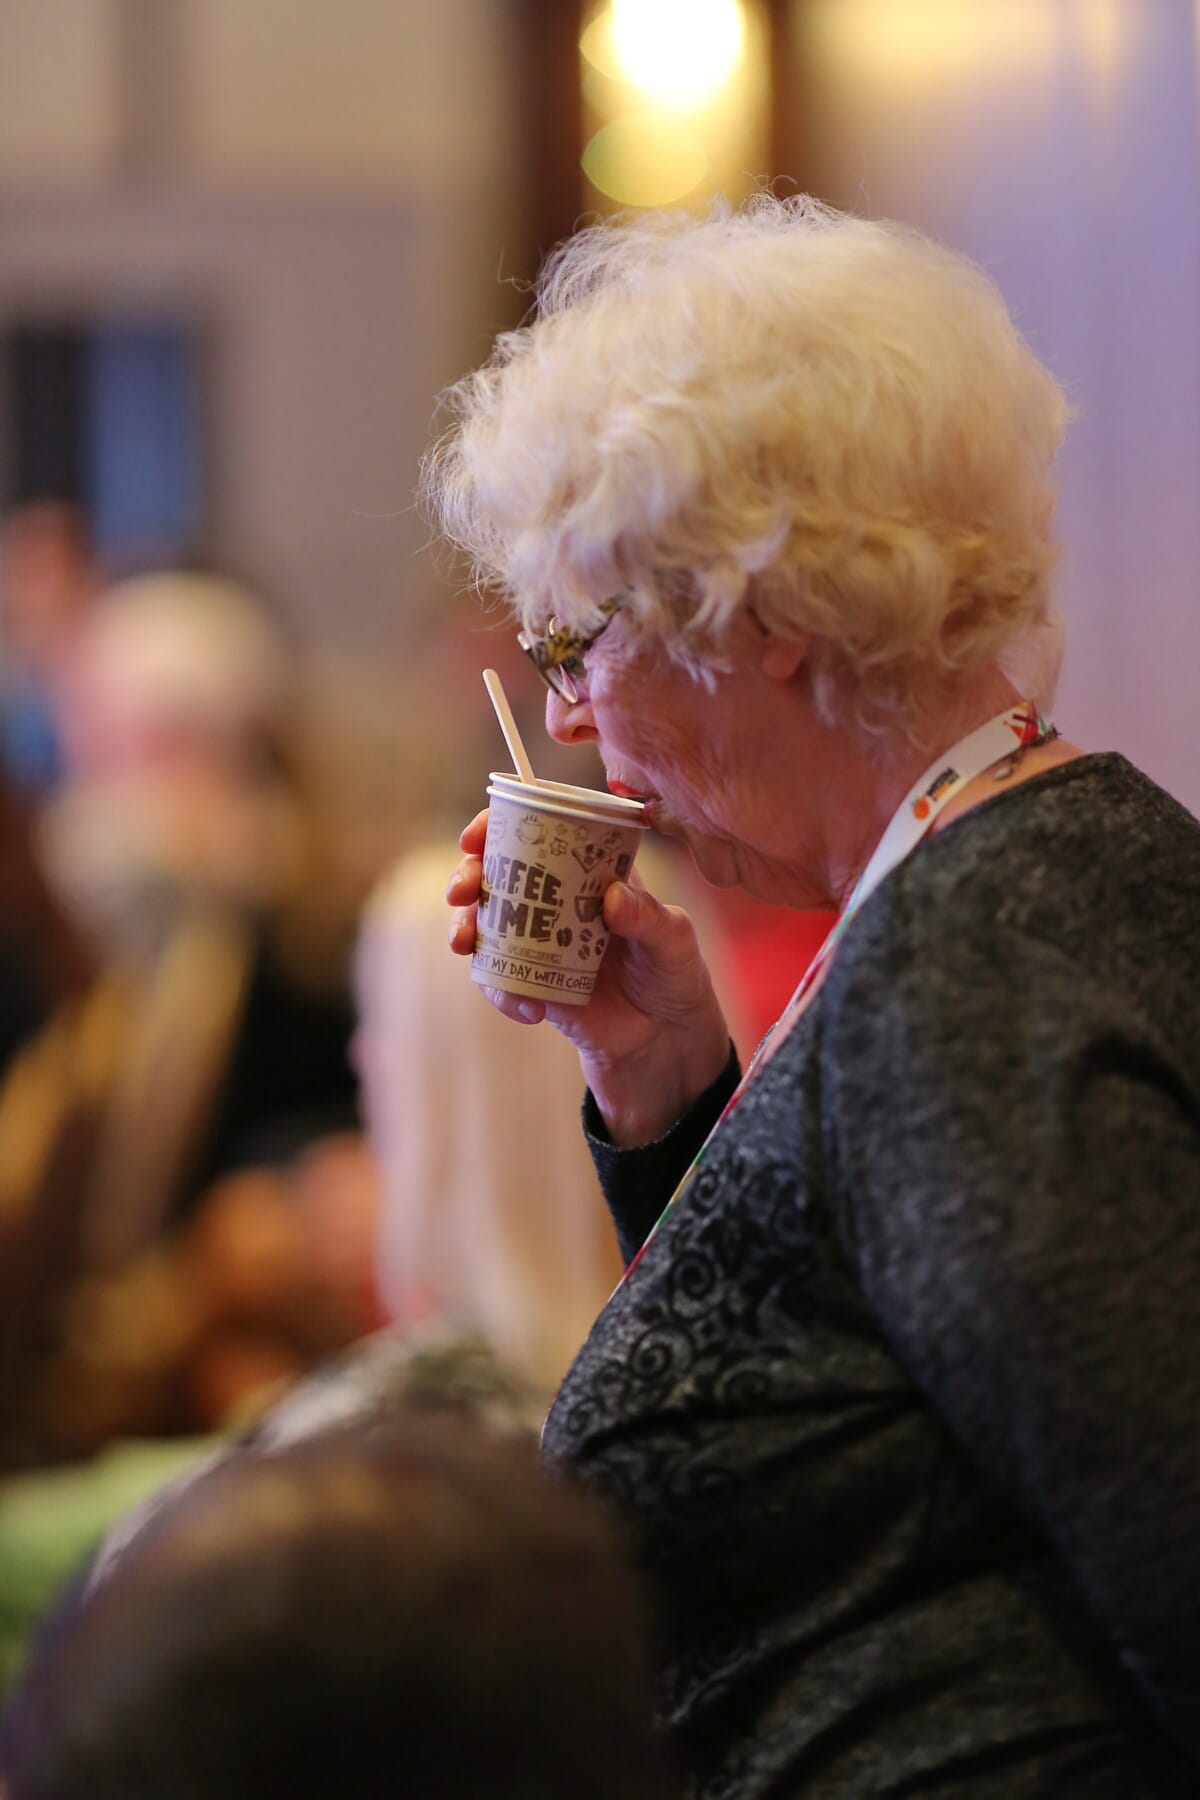 老太太, 奶奶, 喝, 咖啡杯, 咖啡, 人, 女人, 肖像, 饮料, 室内